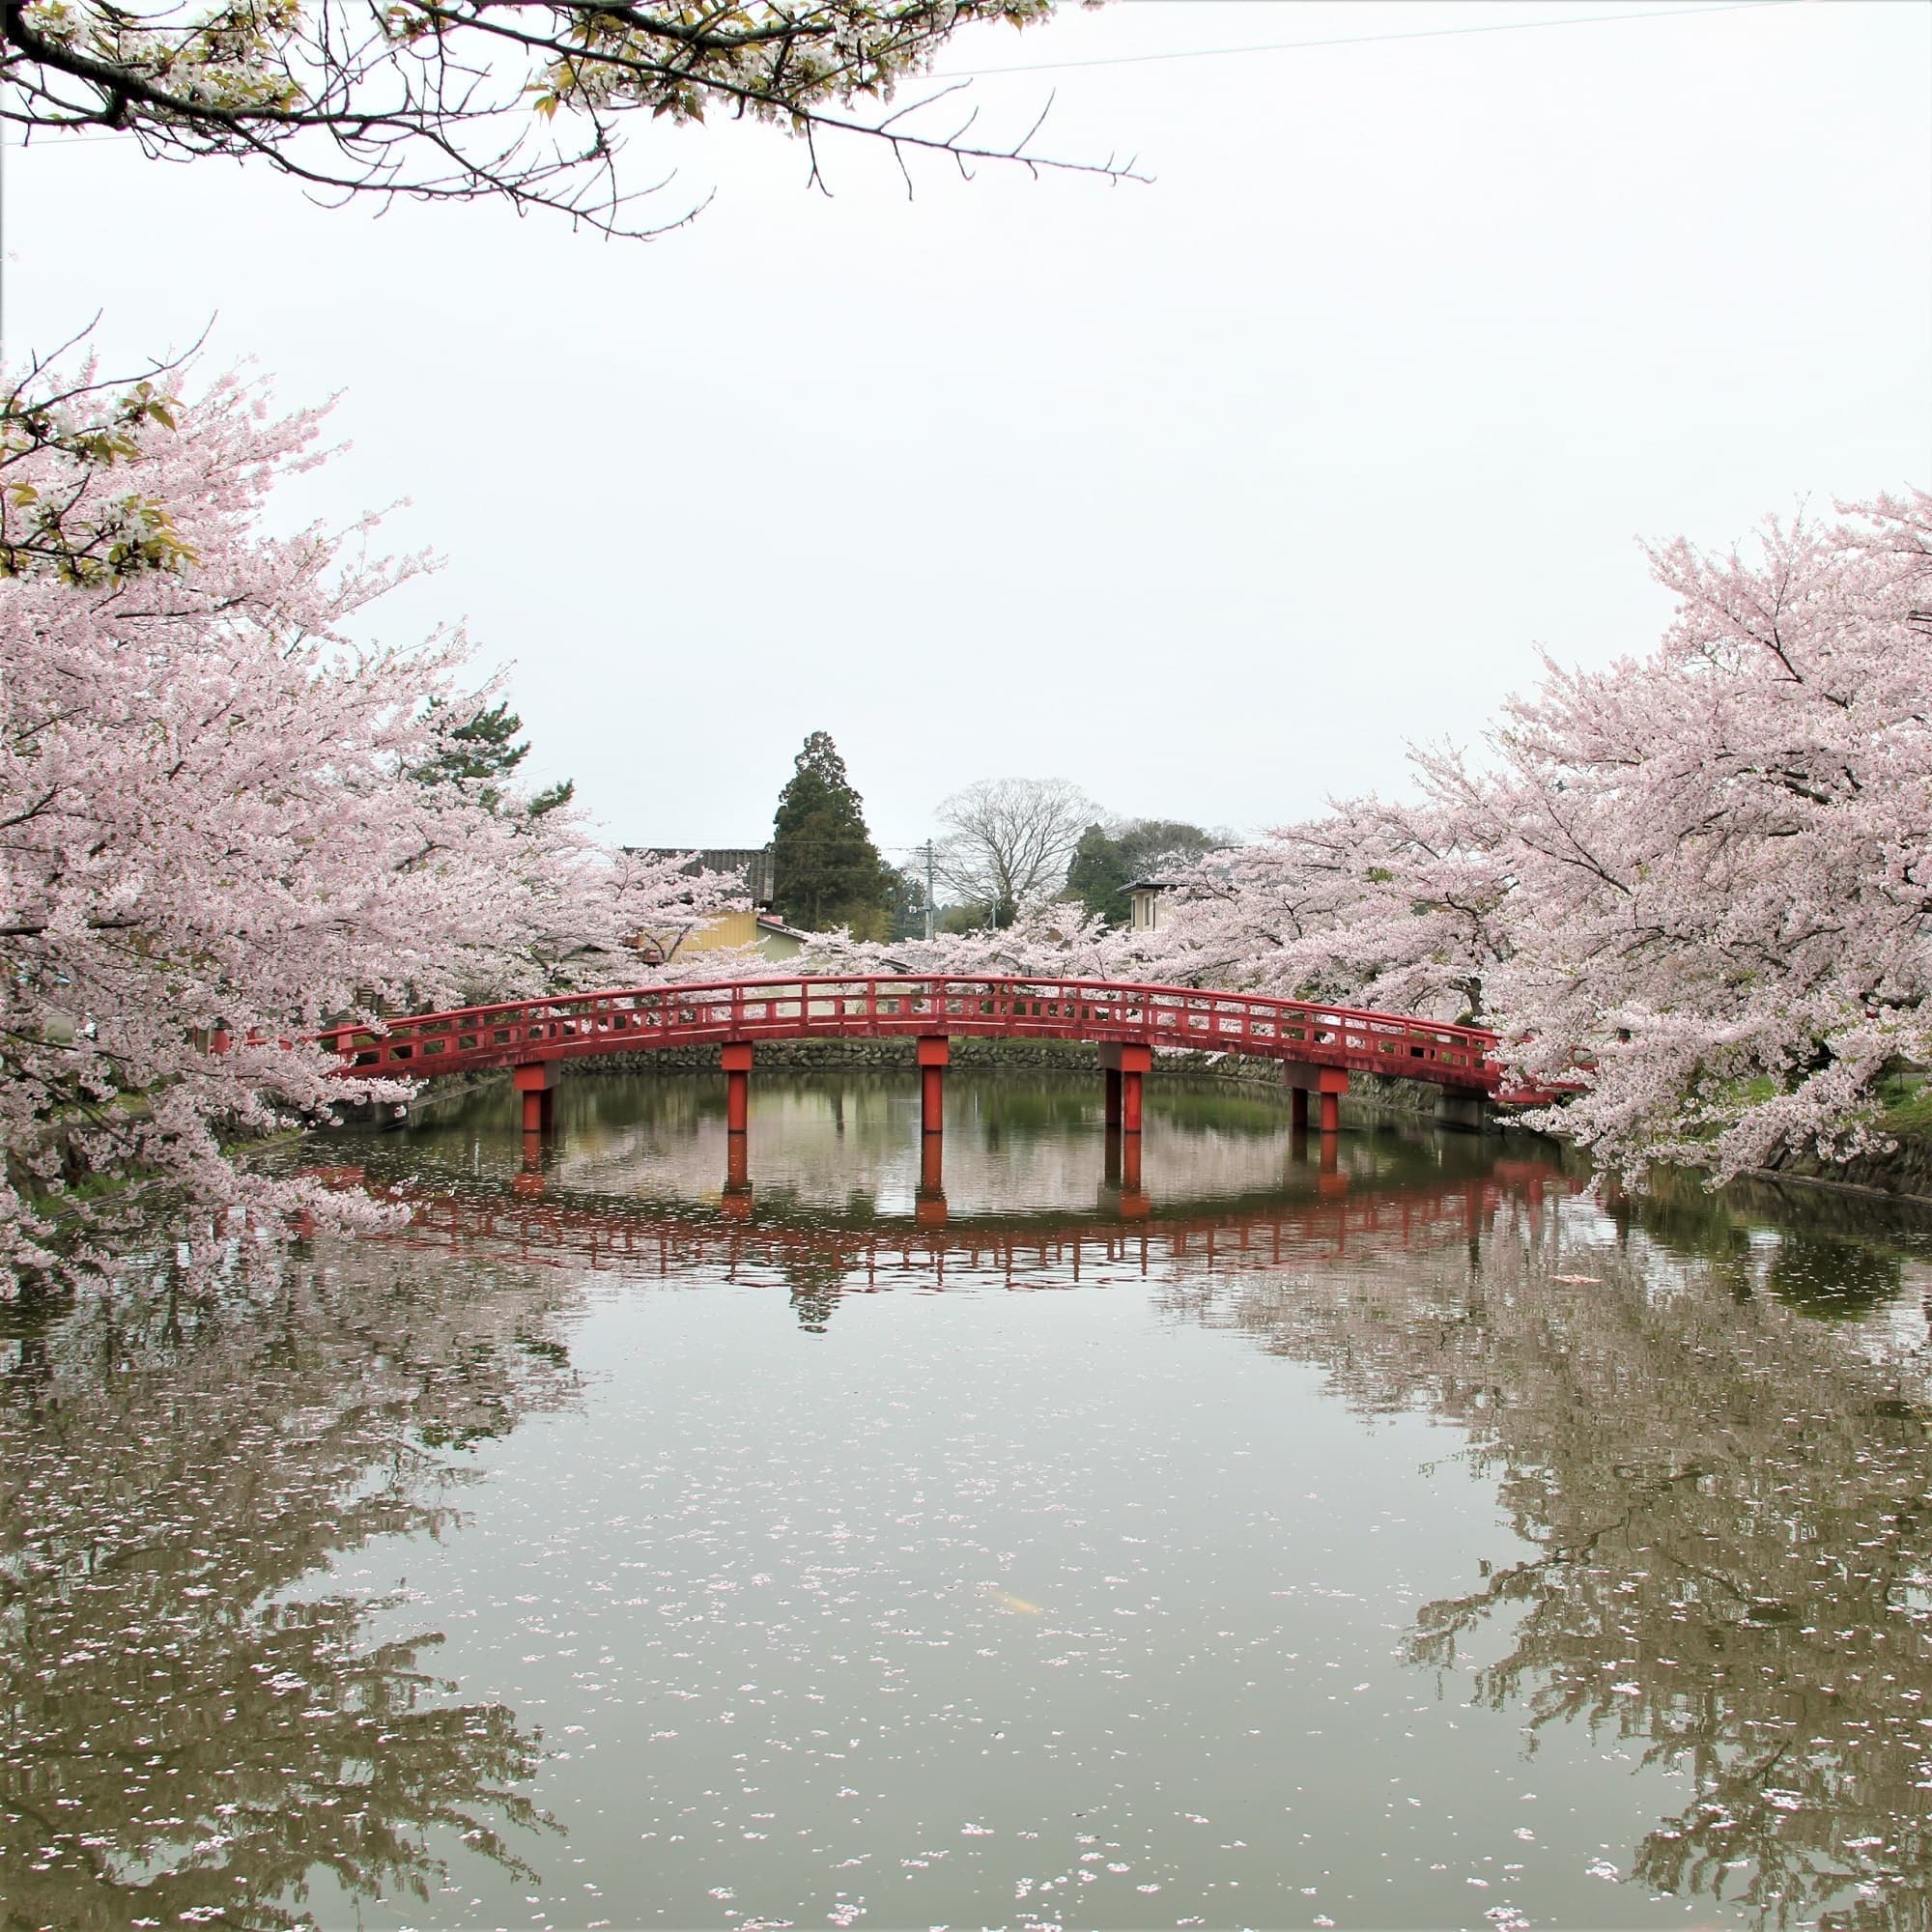 元禄8年に相馬中村藩5代藩主相馬昌胤が放生会を行うために掘った池で、池は放生池、架かる橋を神路橋と昌胤が命名しました。